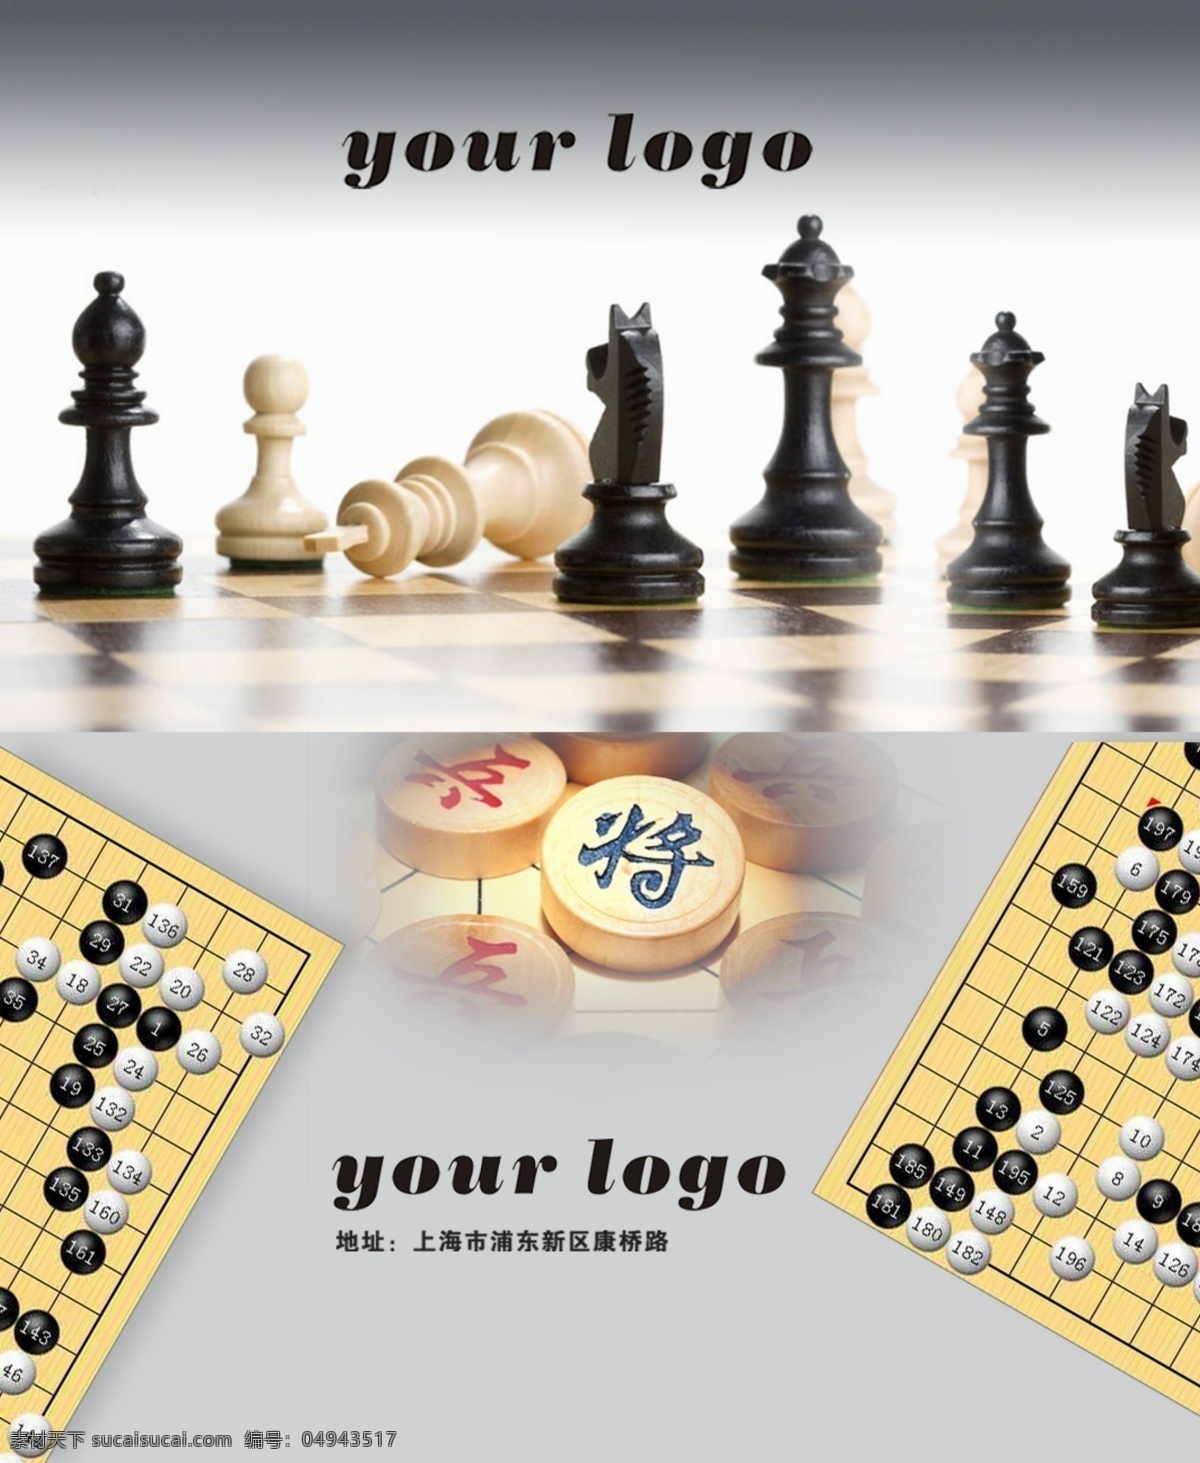 国际名片5 象棋名片 围棋 五子棋 国际象棋 企业名片 创意名片 个性名片 白色